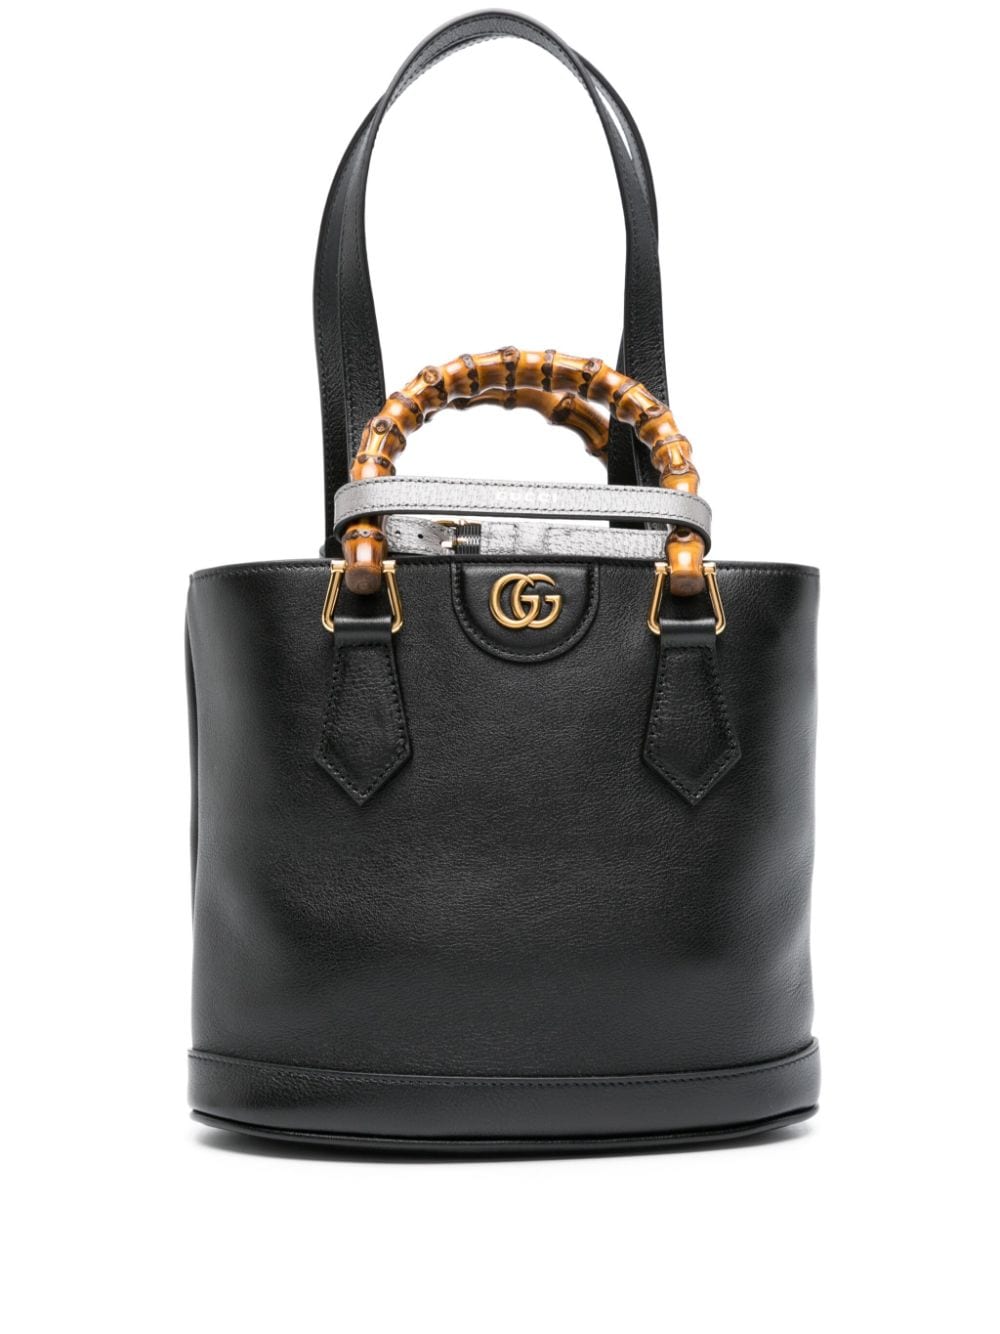 Gucci Small Diana Leather Tote Bag - Farfetch